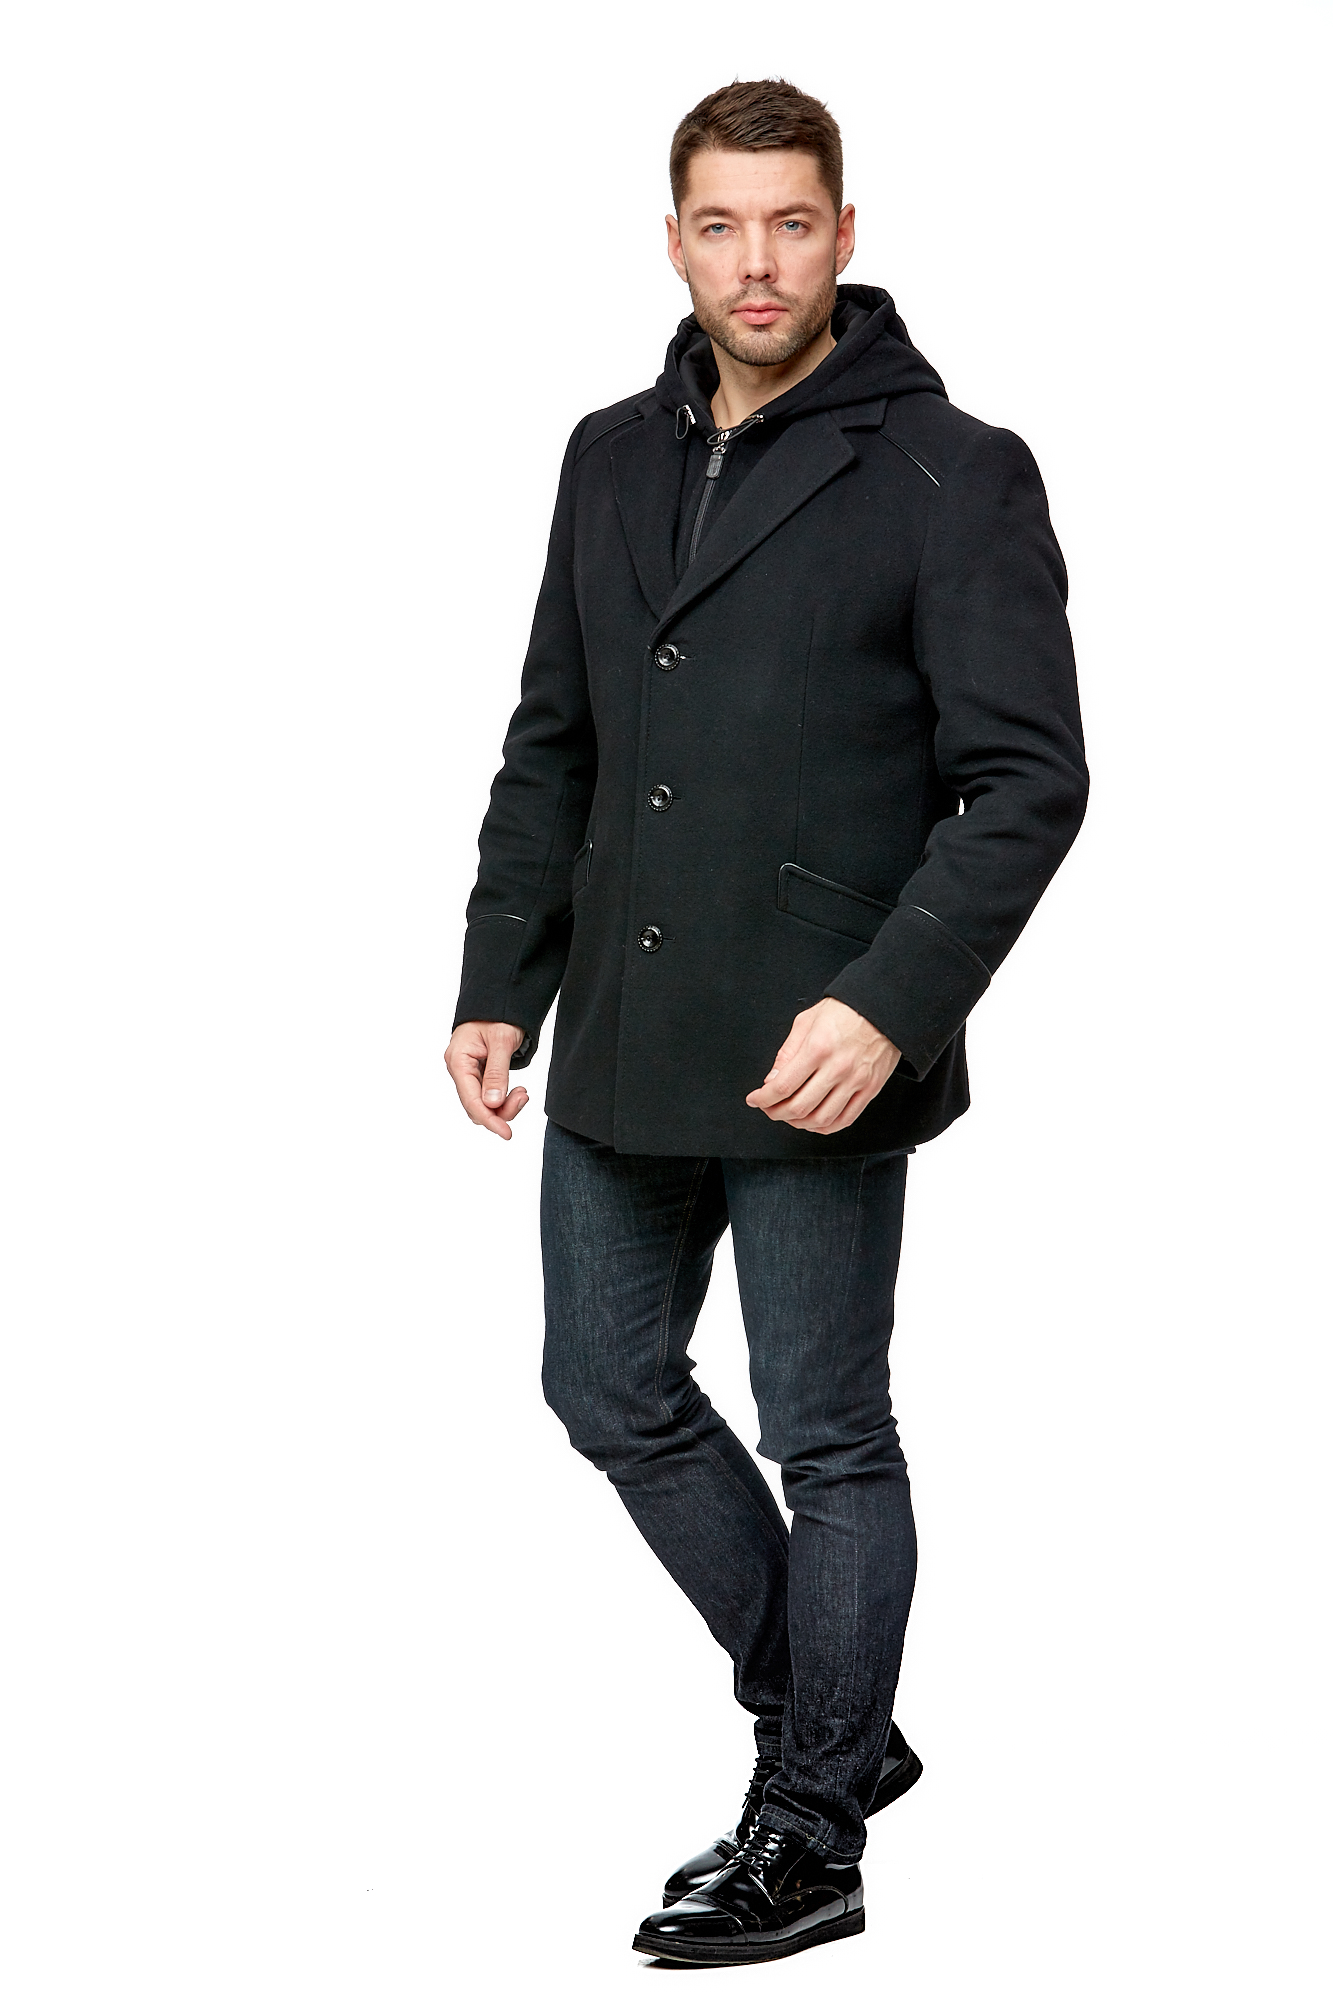 Мужское пальто из текстиля с воротником 8002075-2